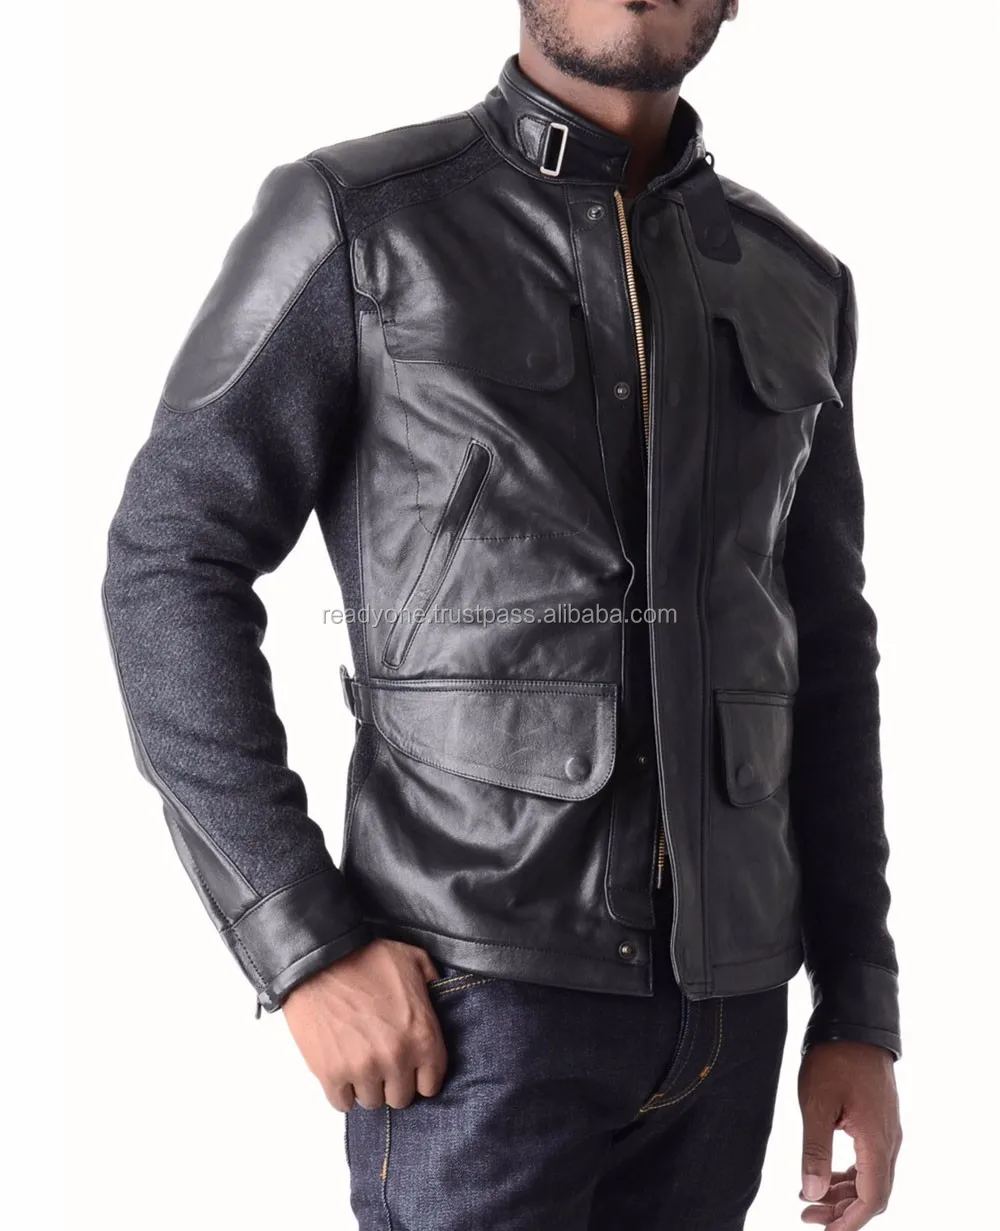 Classyak Men/'s Fashion Suede Leather Stylish Jacket